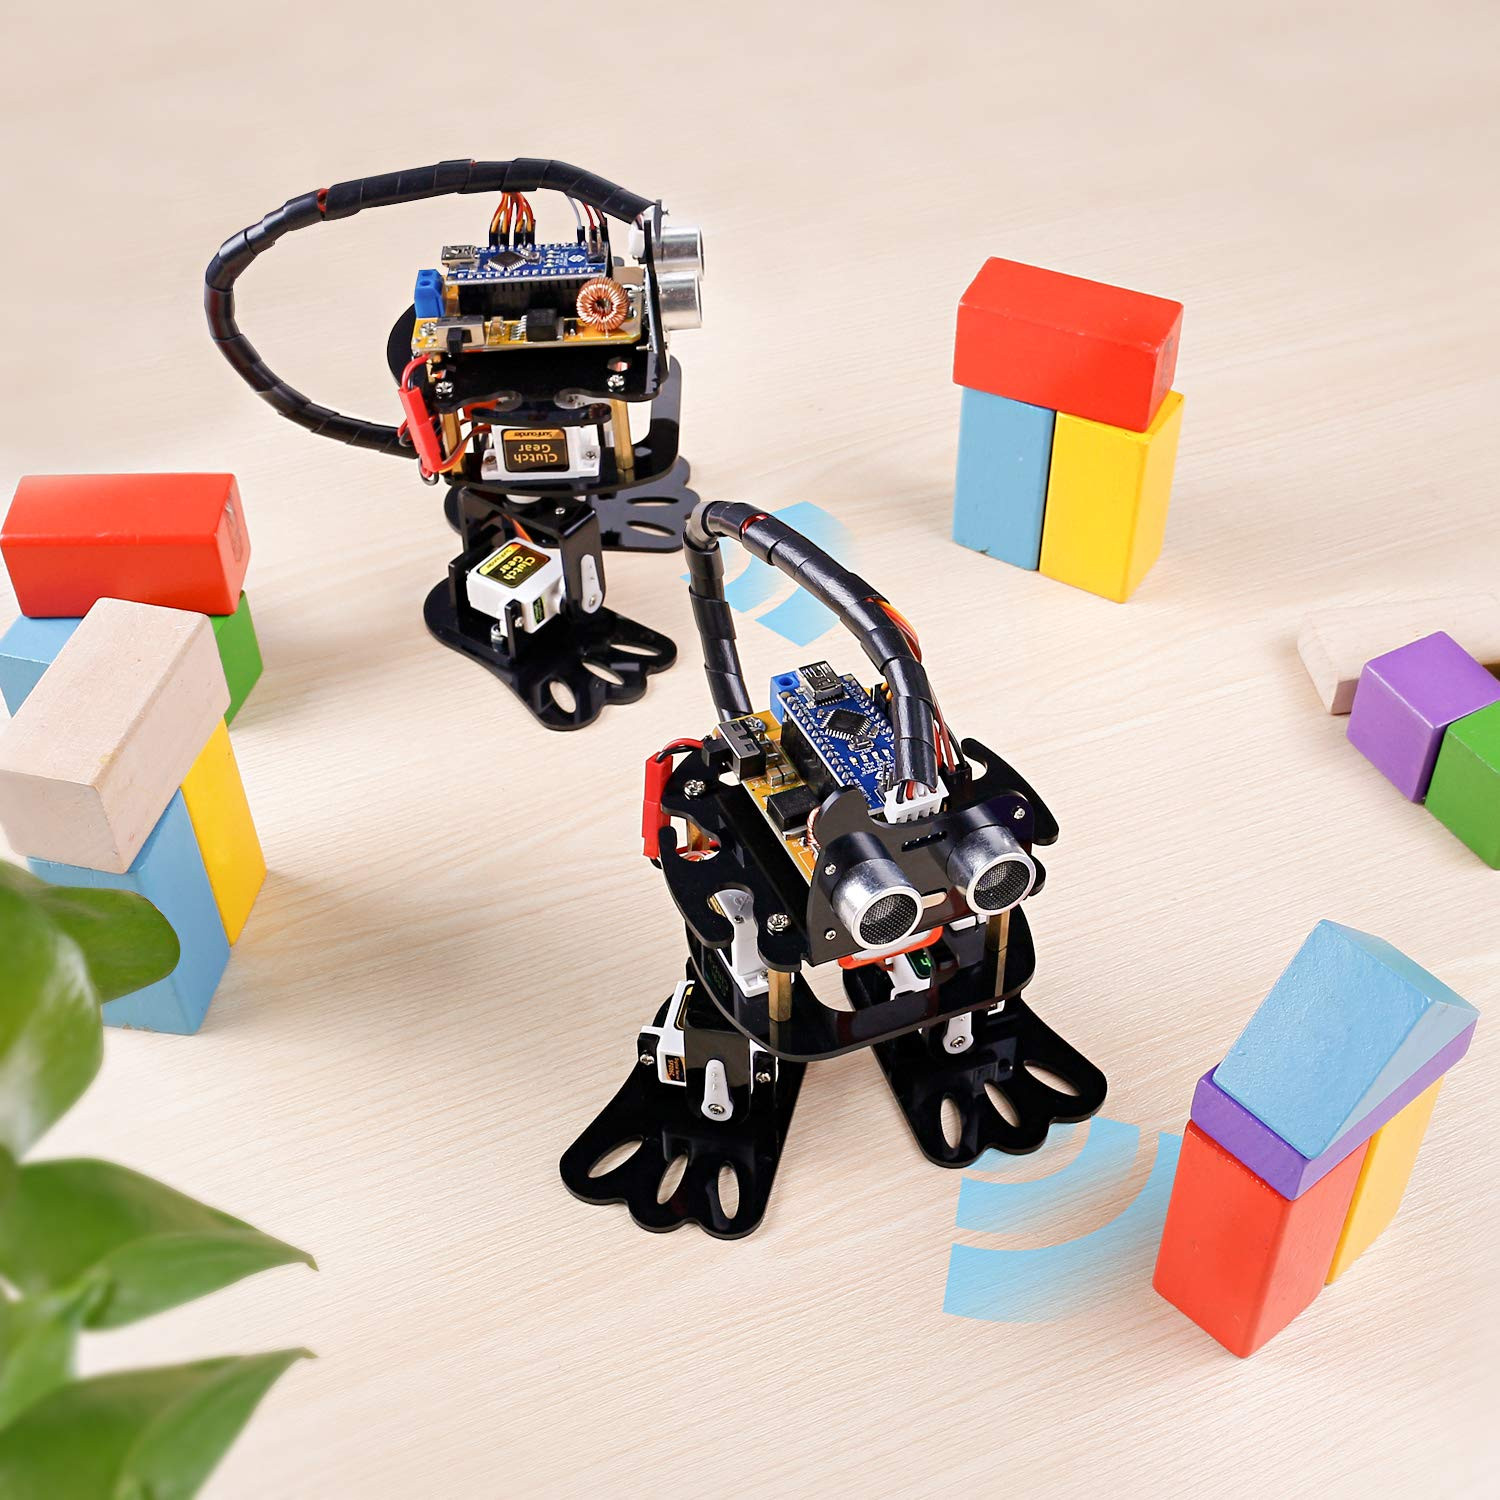 DIY Robot Kit For Adults
 SunFounder Arduino Robotics Kit 4 DOF Dancing Sloth